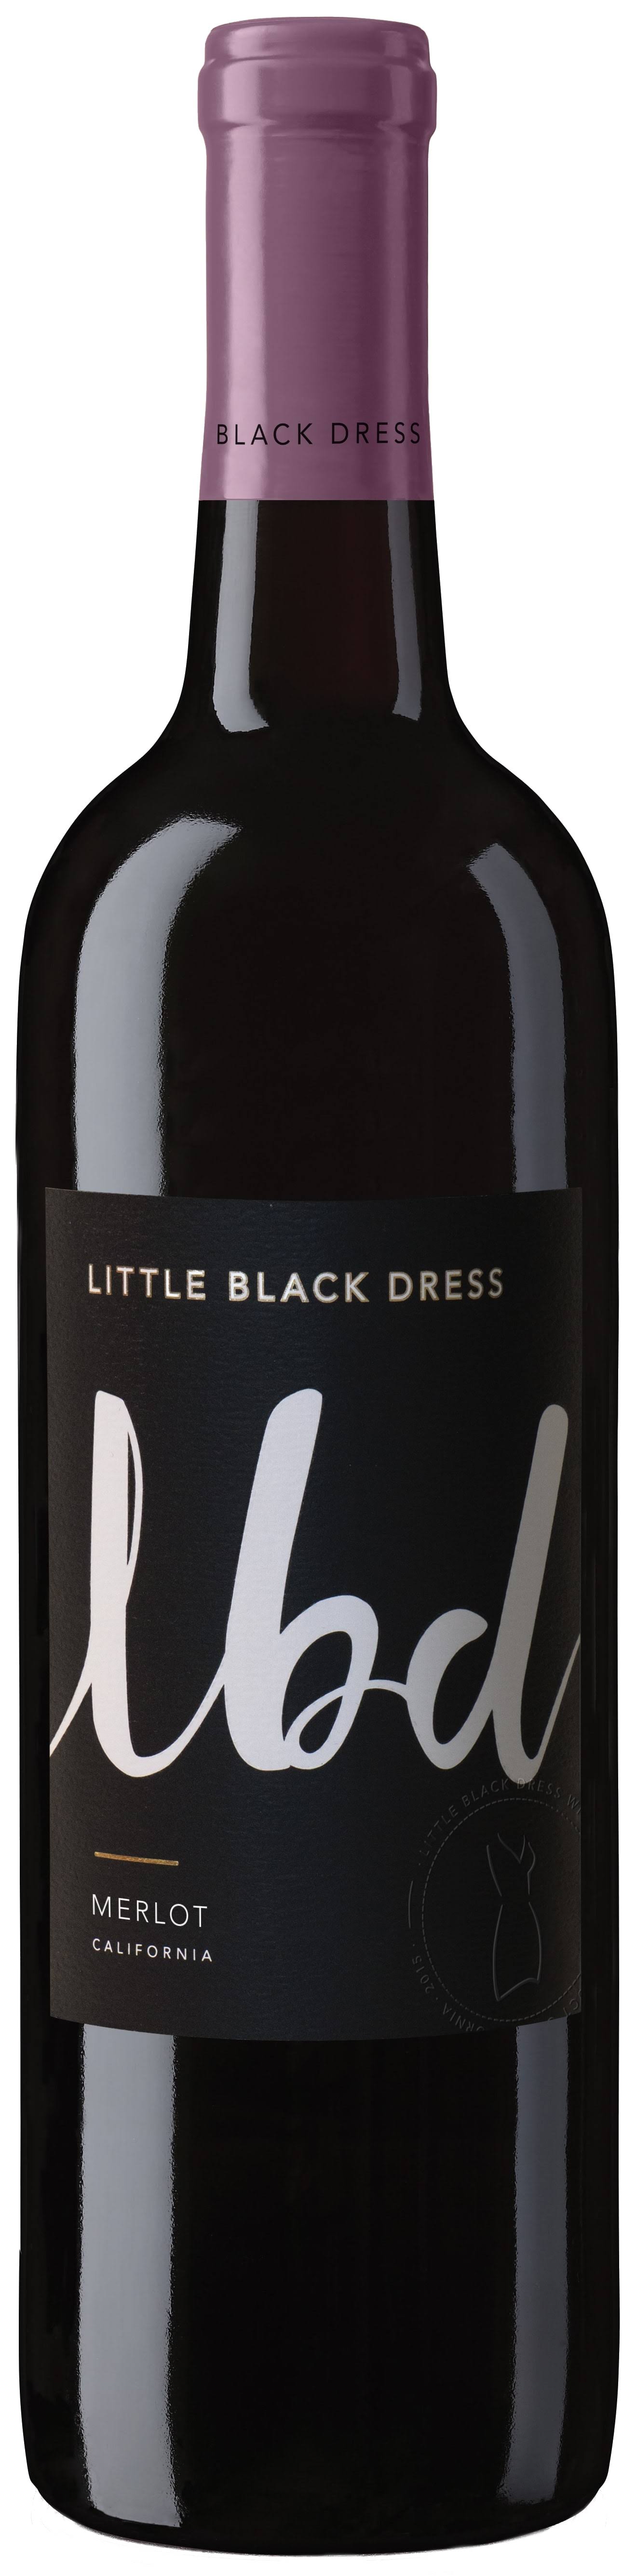 Little Black Dress Merlot